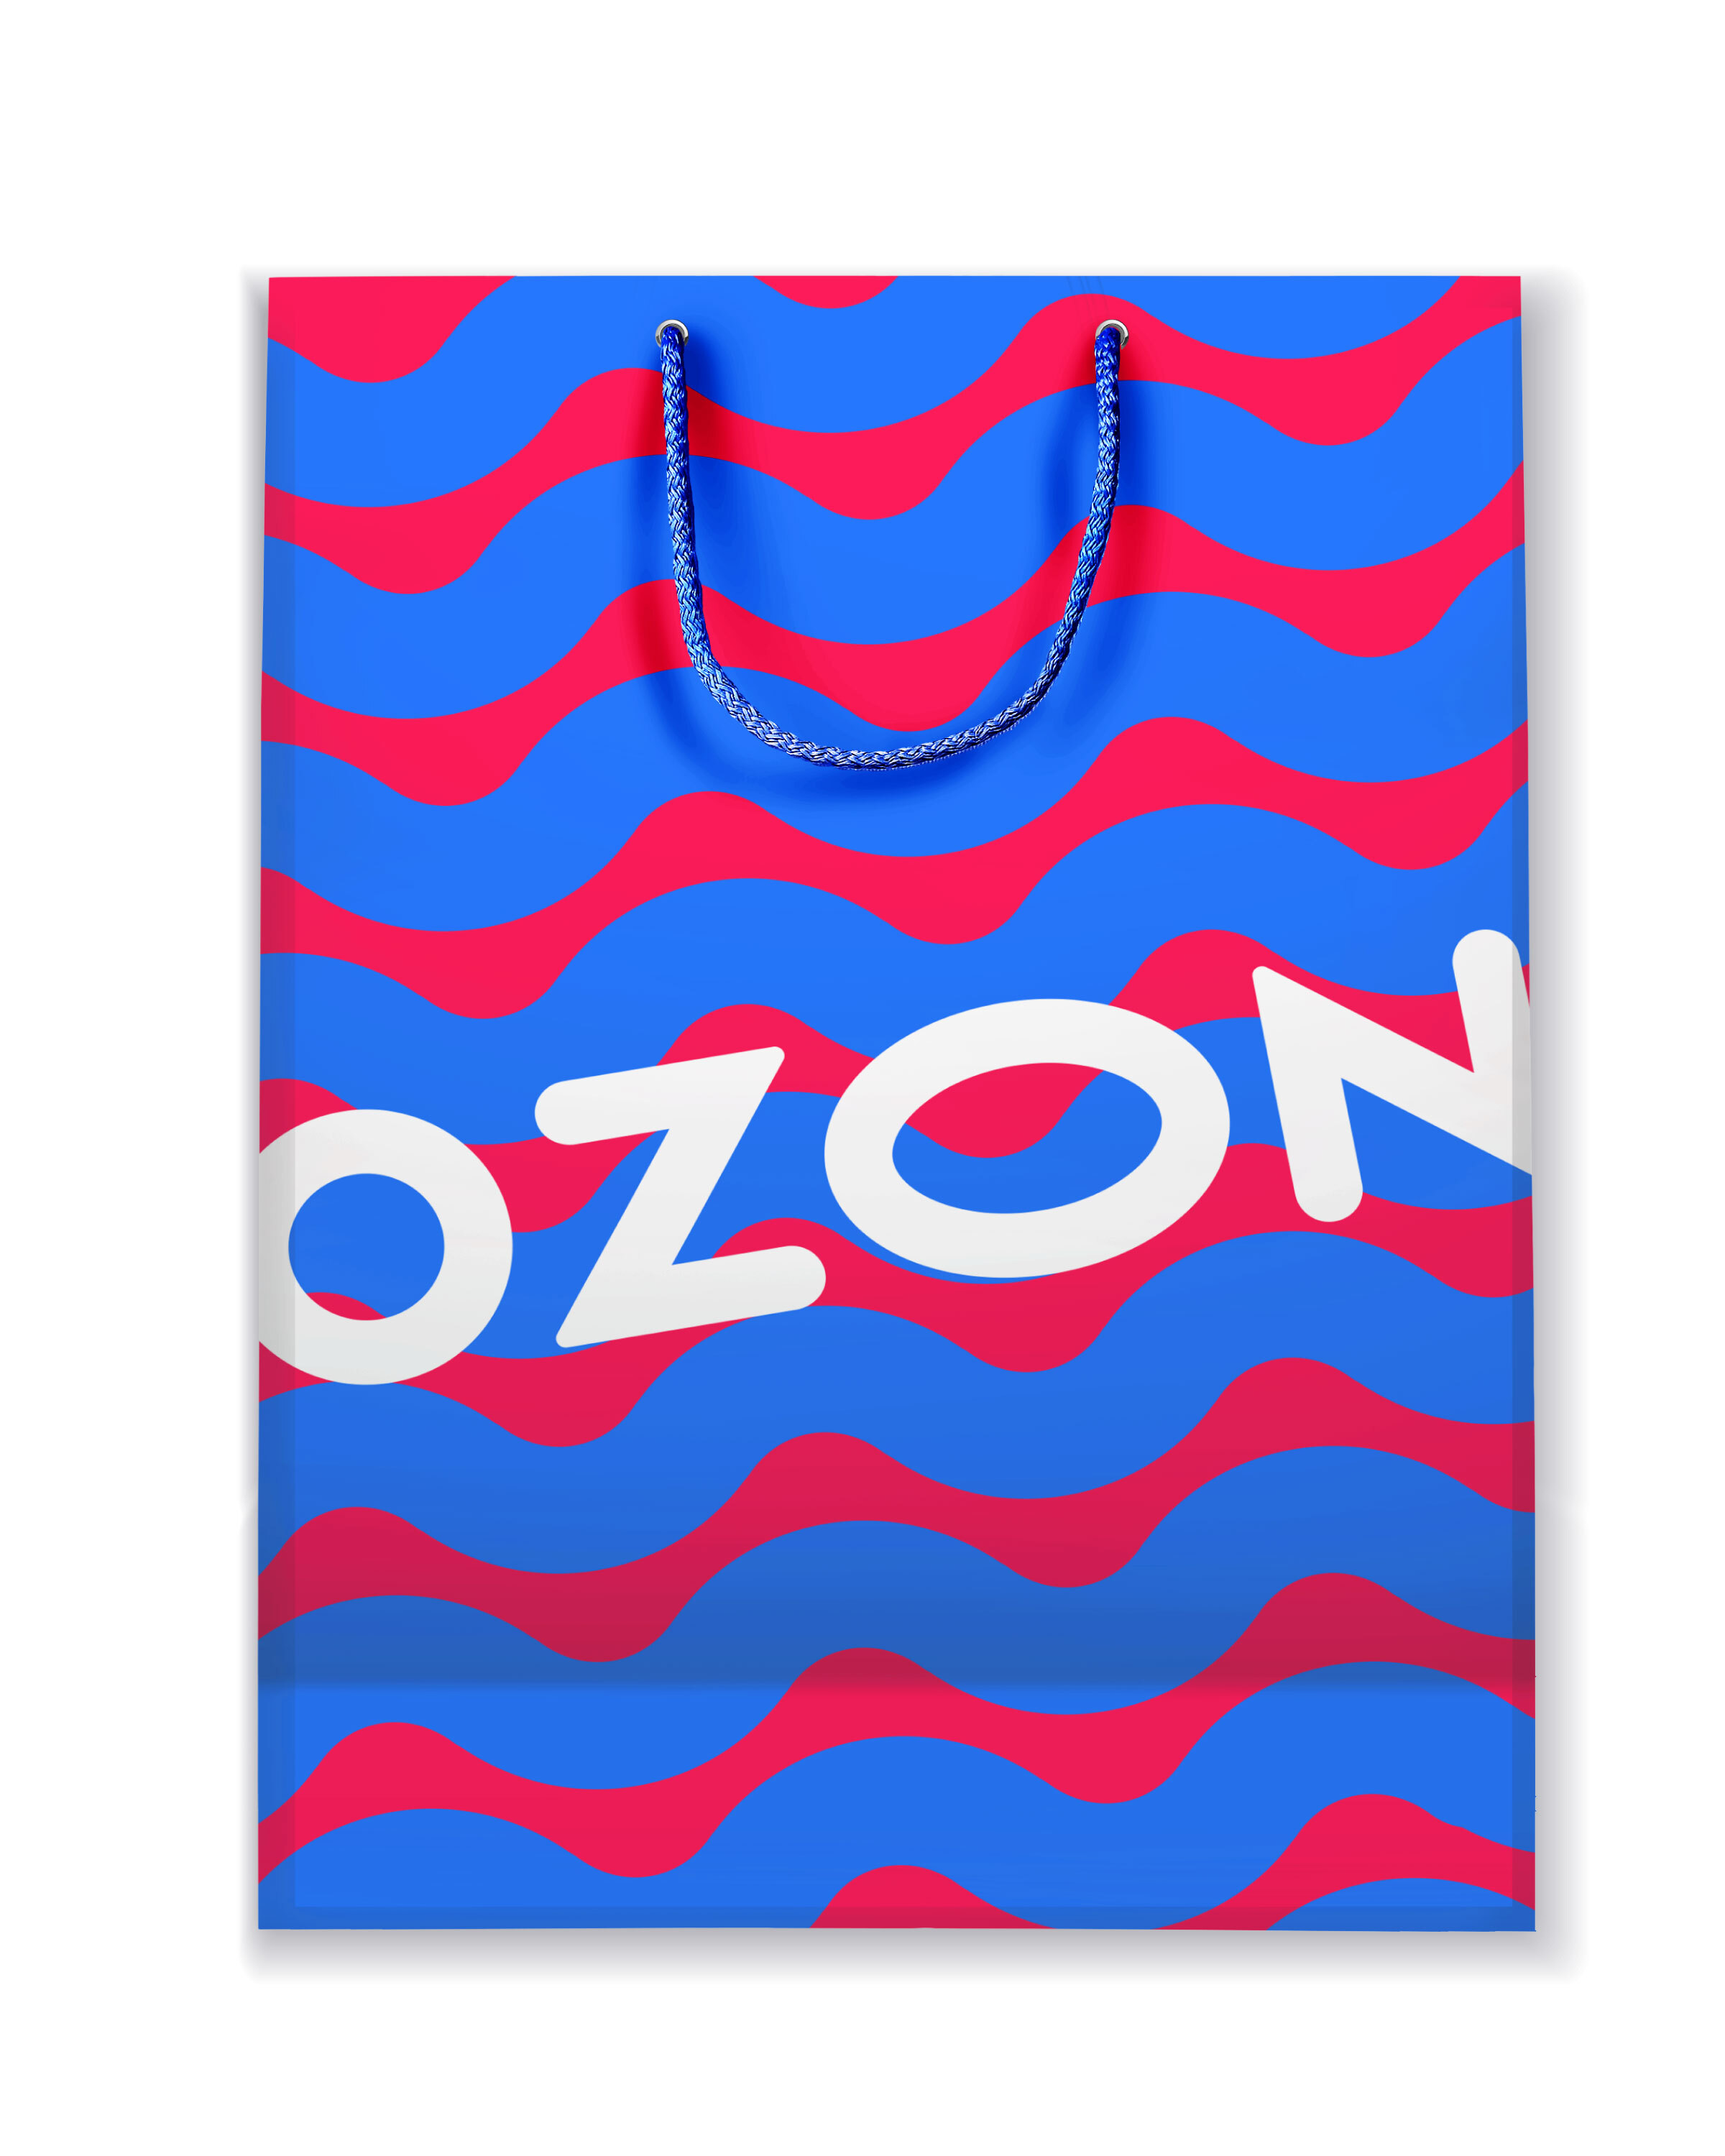 Пакет озон пвз. Пакет OZON. Пакет Озон фирменный. Пакеты OZON фирменные. Брендированные пакеты Озон.